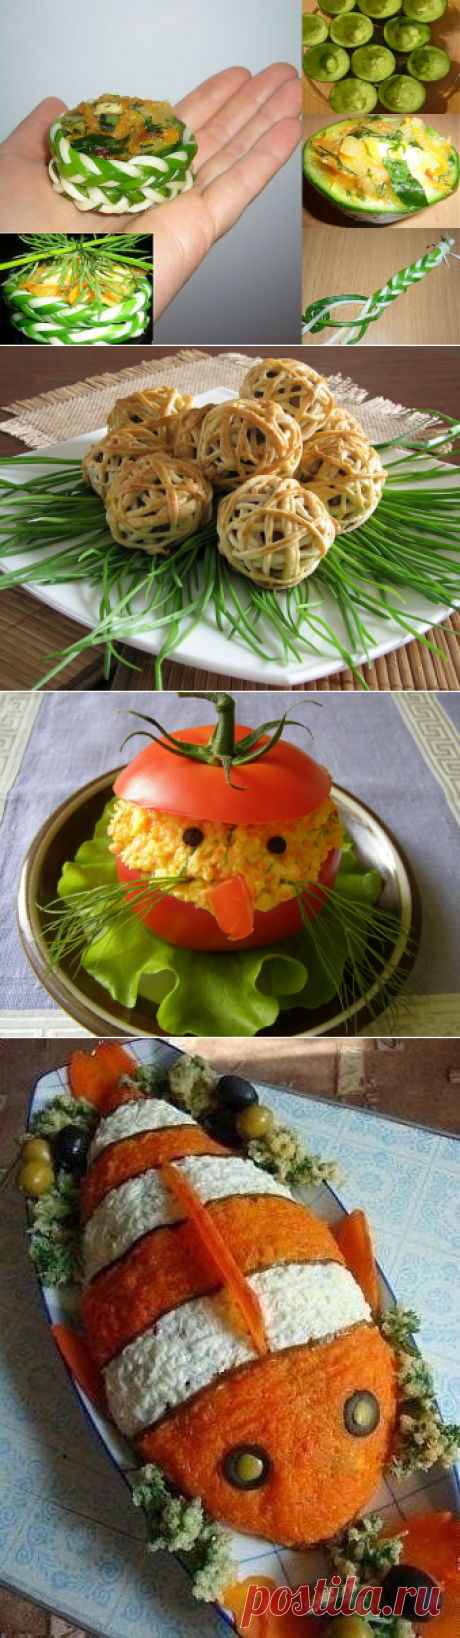 Несколько вариантов украшения салатов и праздничных блюд